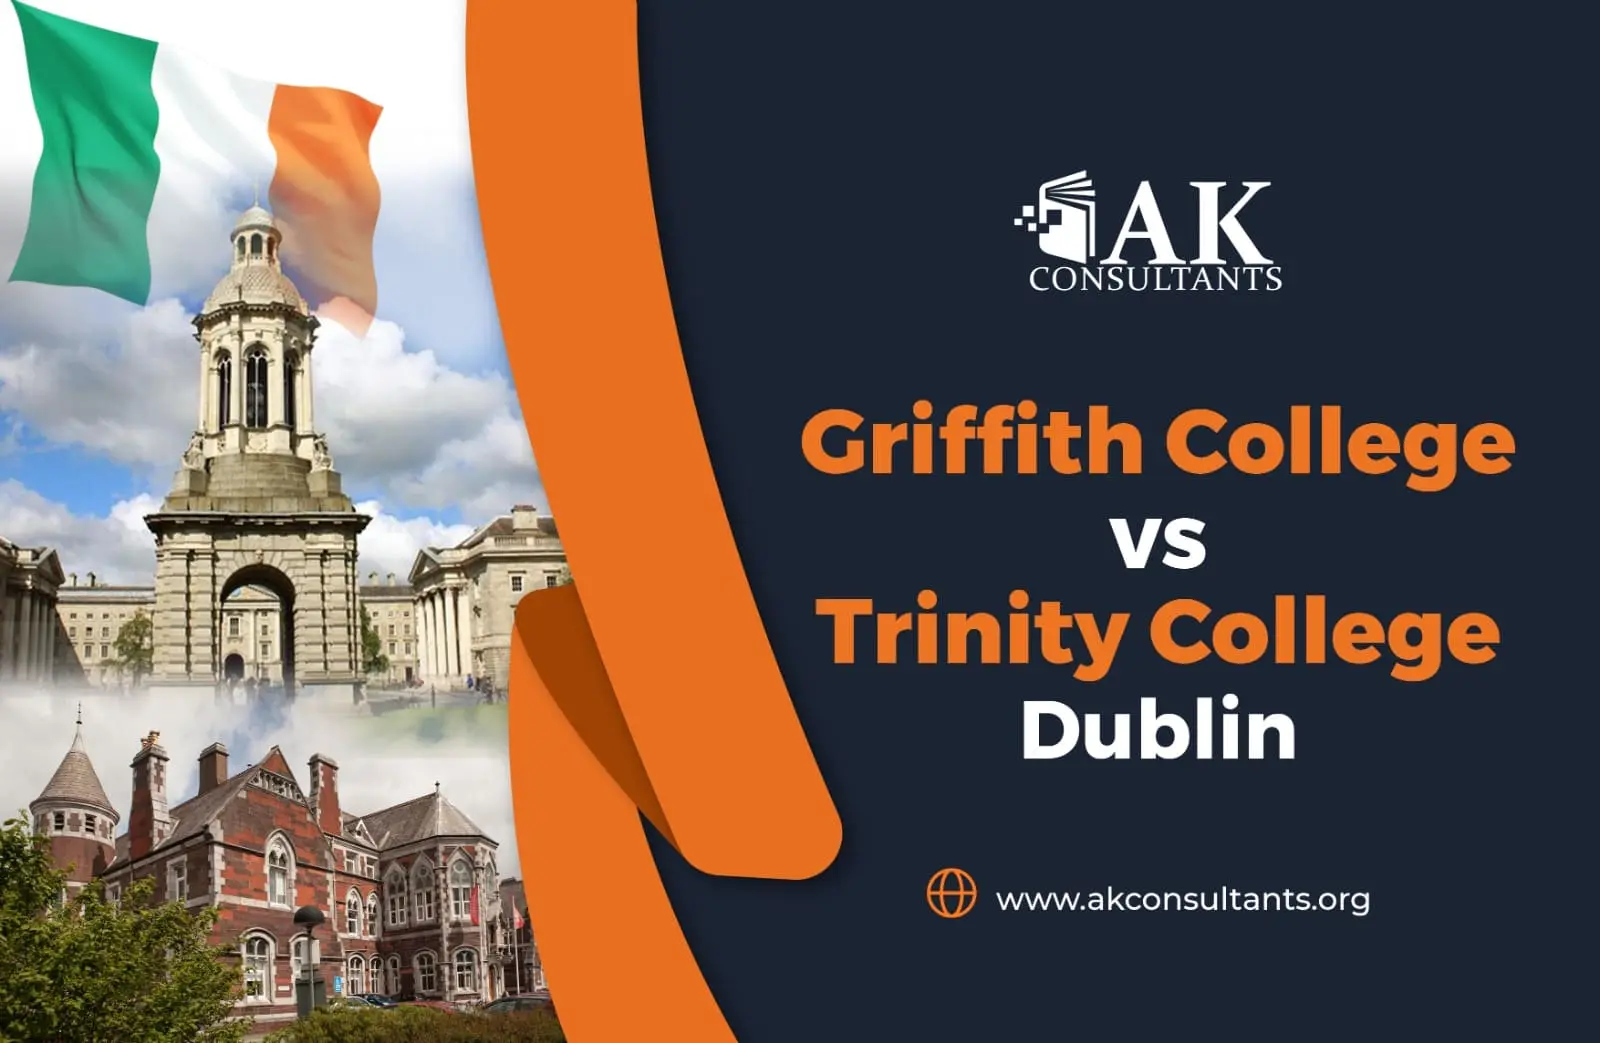 Griffith College vs Trinity College Dublin